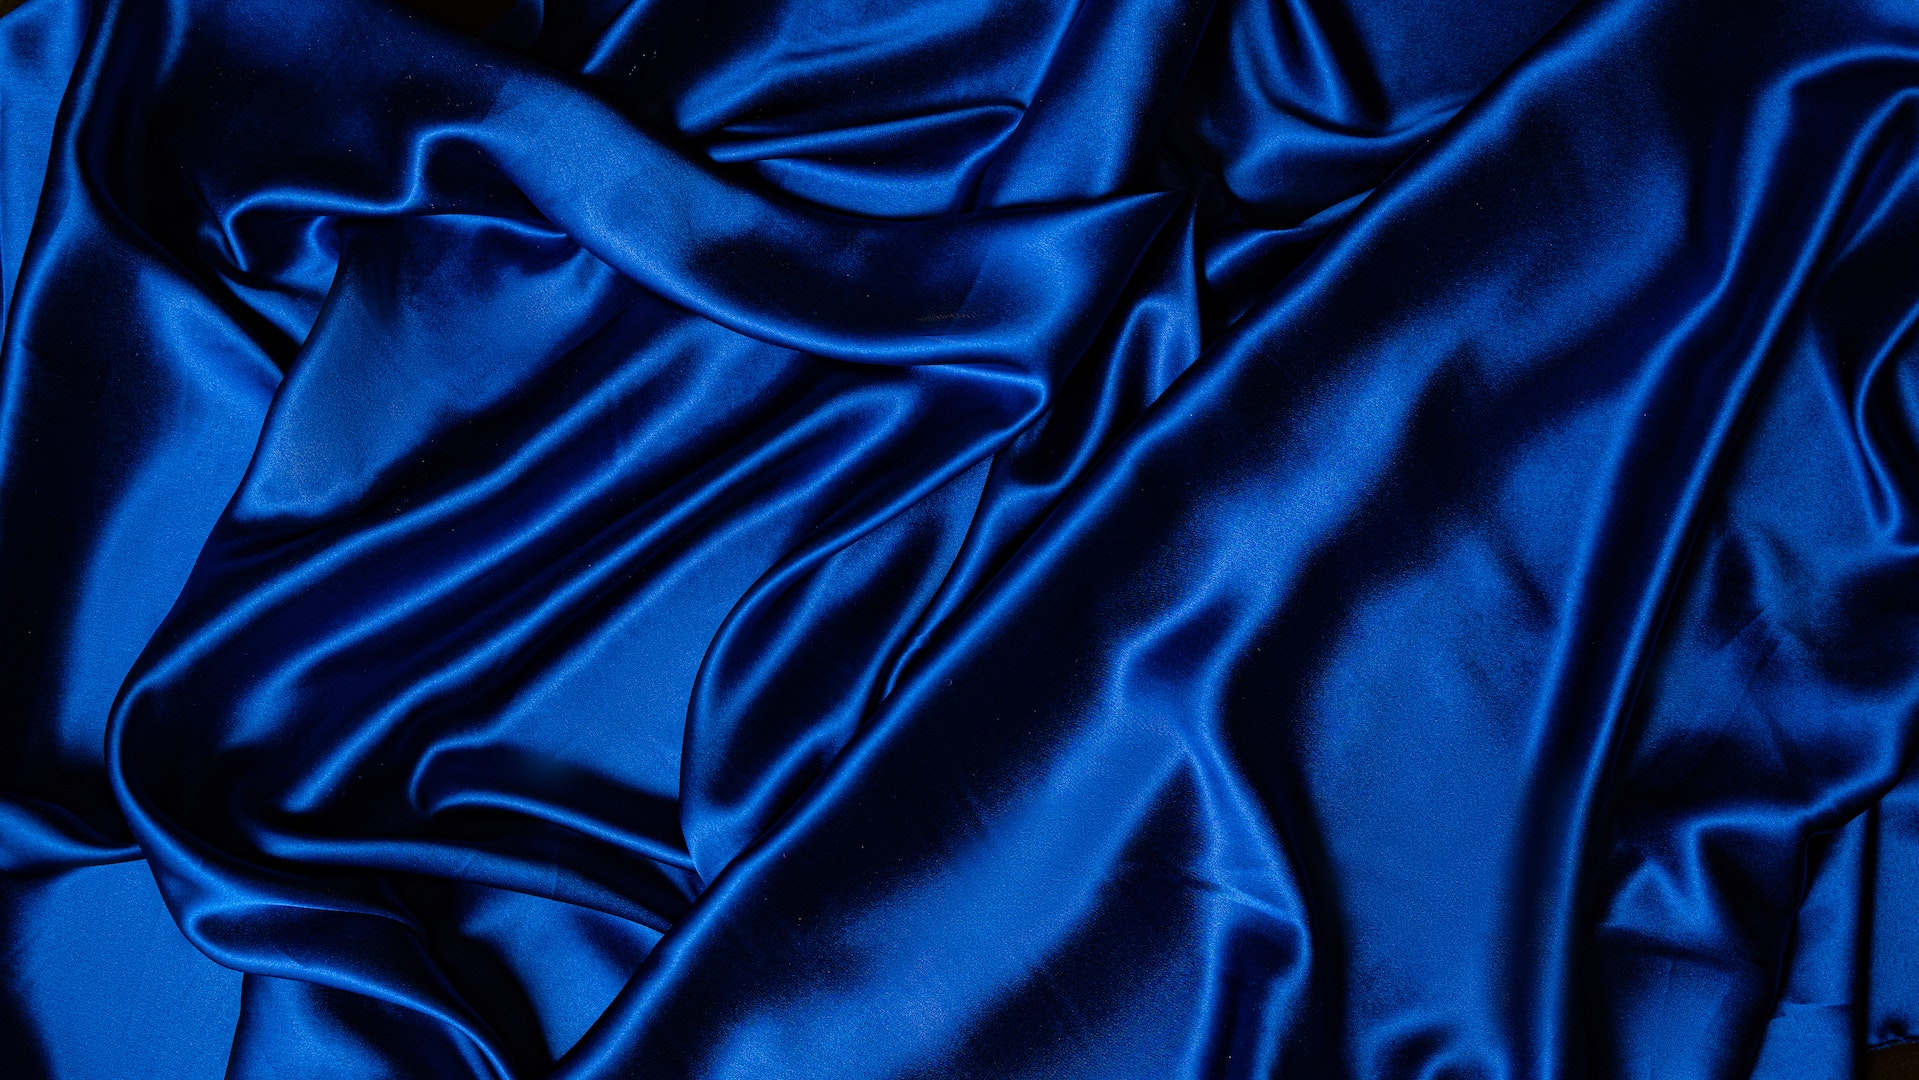 Matière adaptée pour les fêtes : le satin - Photo de Mikhail Nilov: https://www.pexels.com/fr-fr/photo/textile-bleu-sur-surface-plane-7676884/